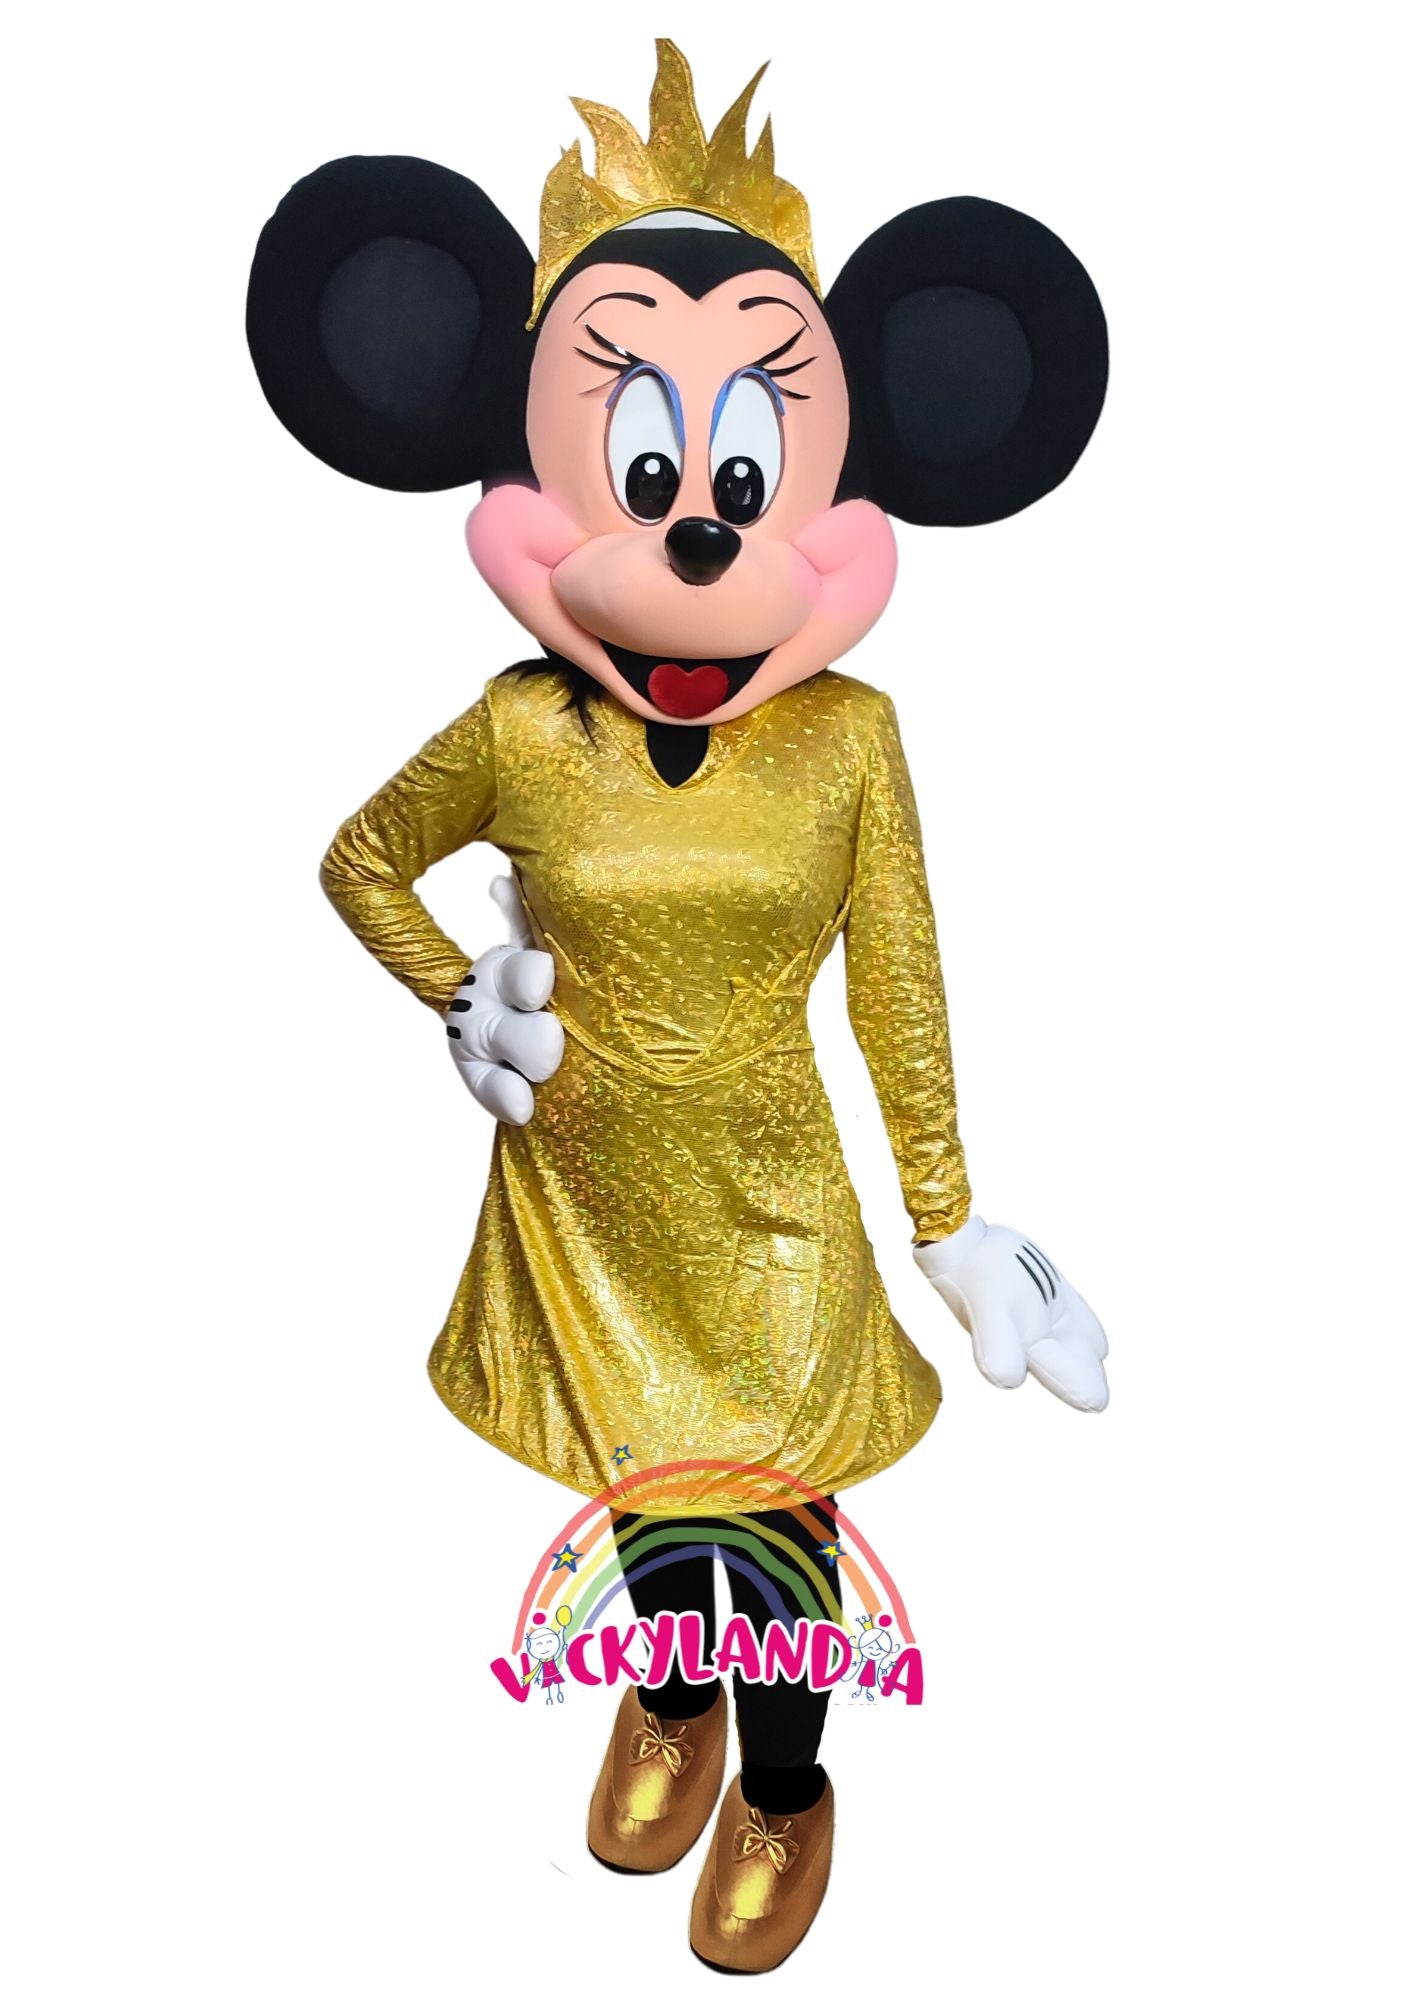 Descubre la magia de nuestro muñeco publicitario de Ratoncita Presumida Oro en Vickylandia. Son disfraces cabezones perfectos para fiestas infantiles, shows, cumpleaños, estrategias publicitarias, espectáculos, cabalgatas y cualquier tipo de evento.